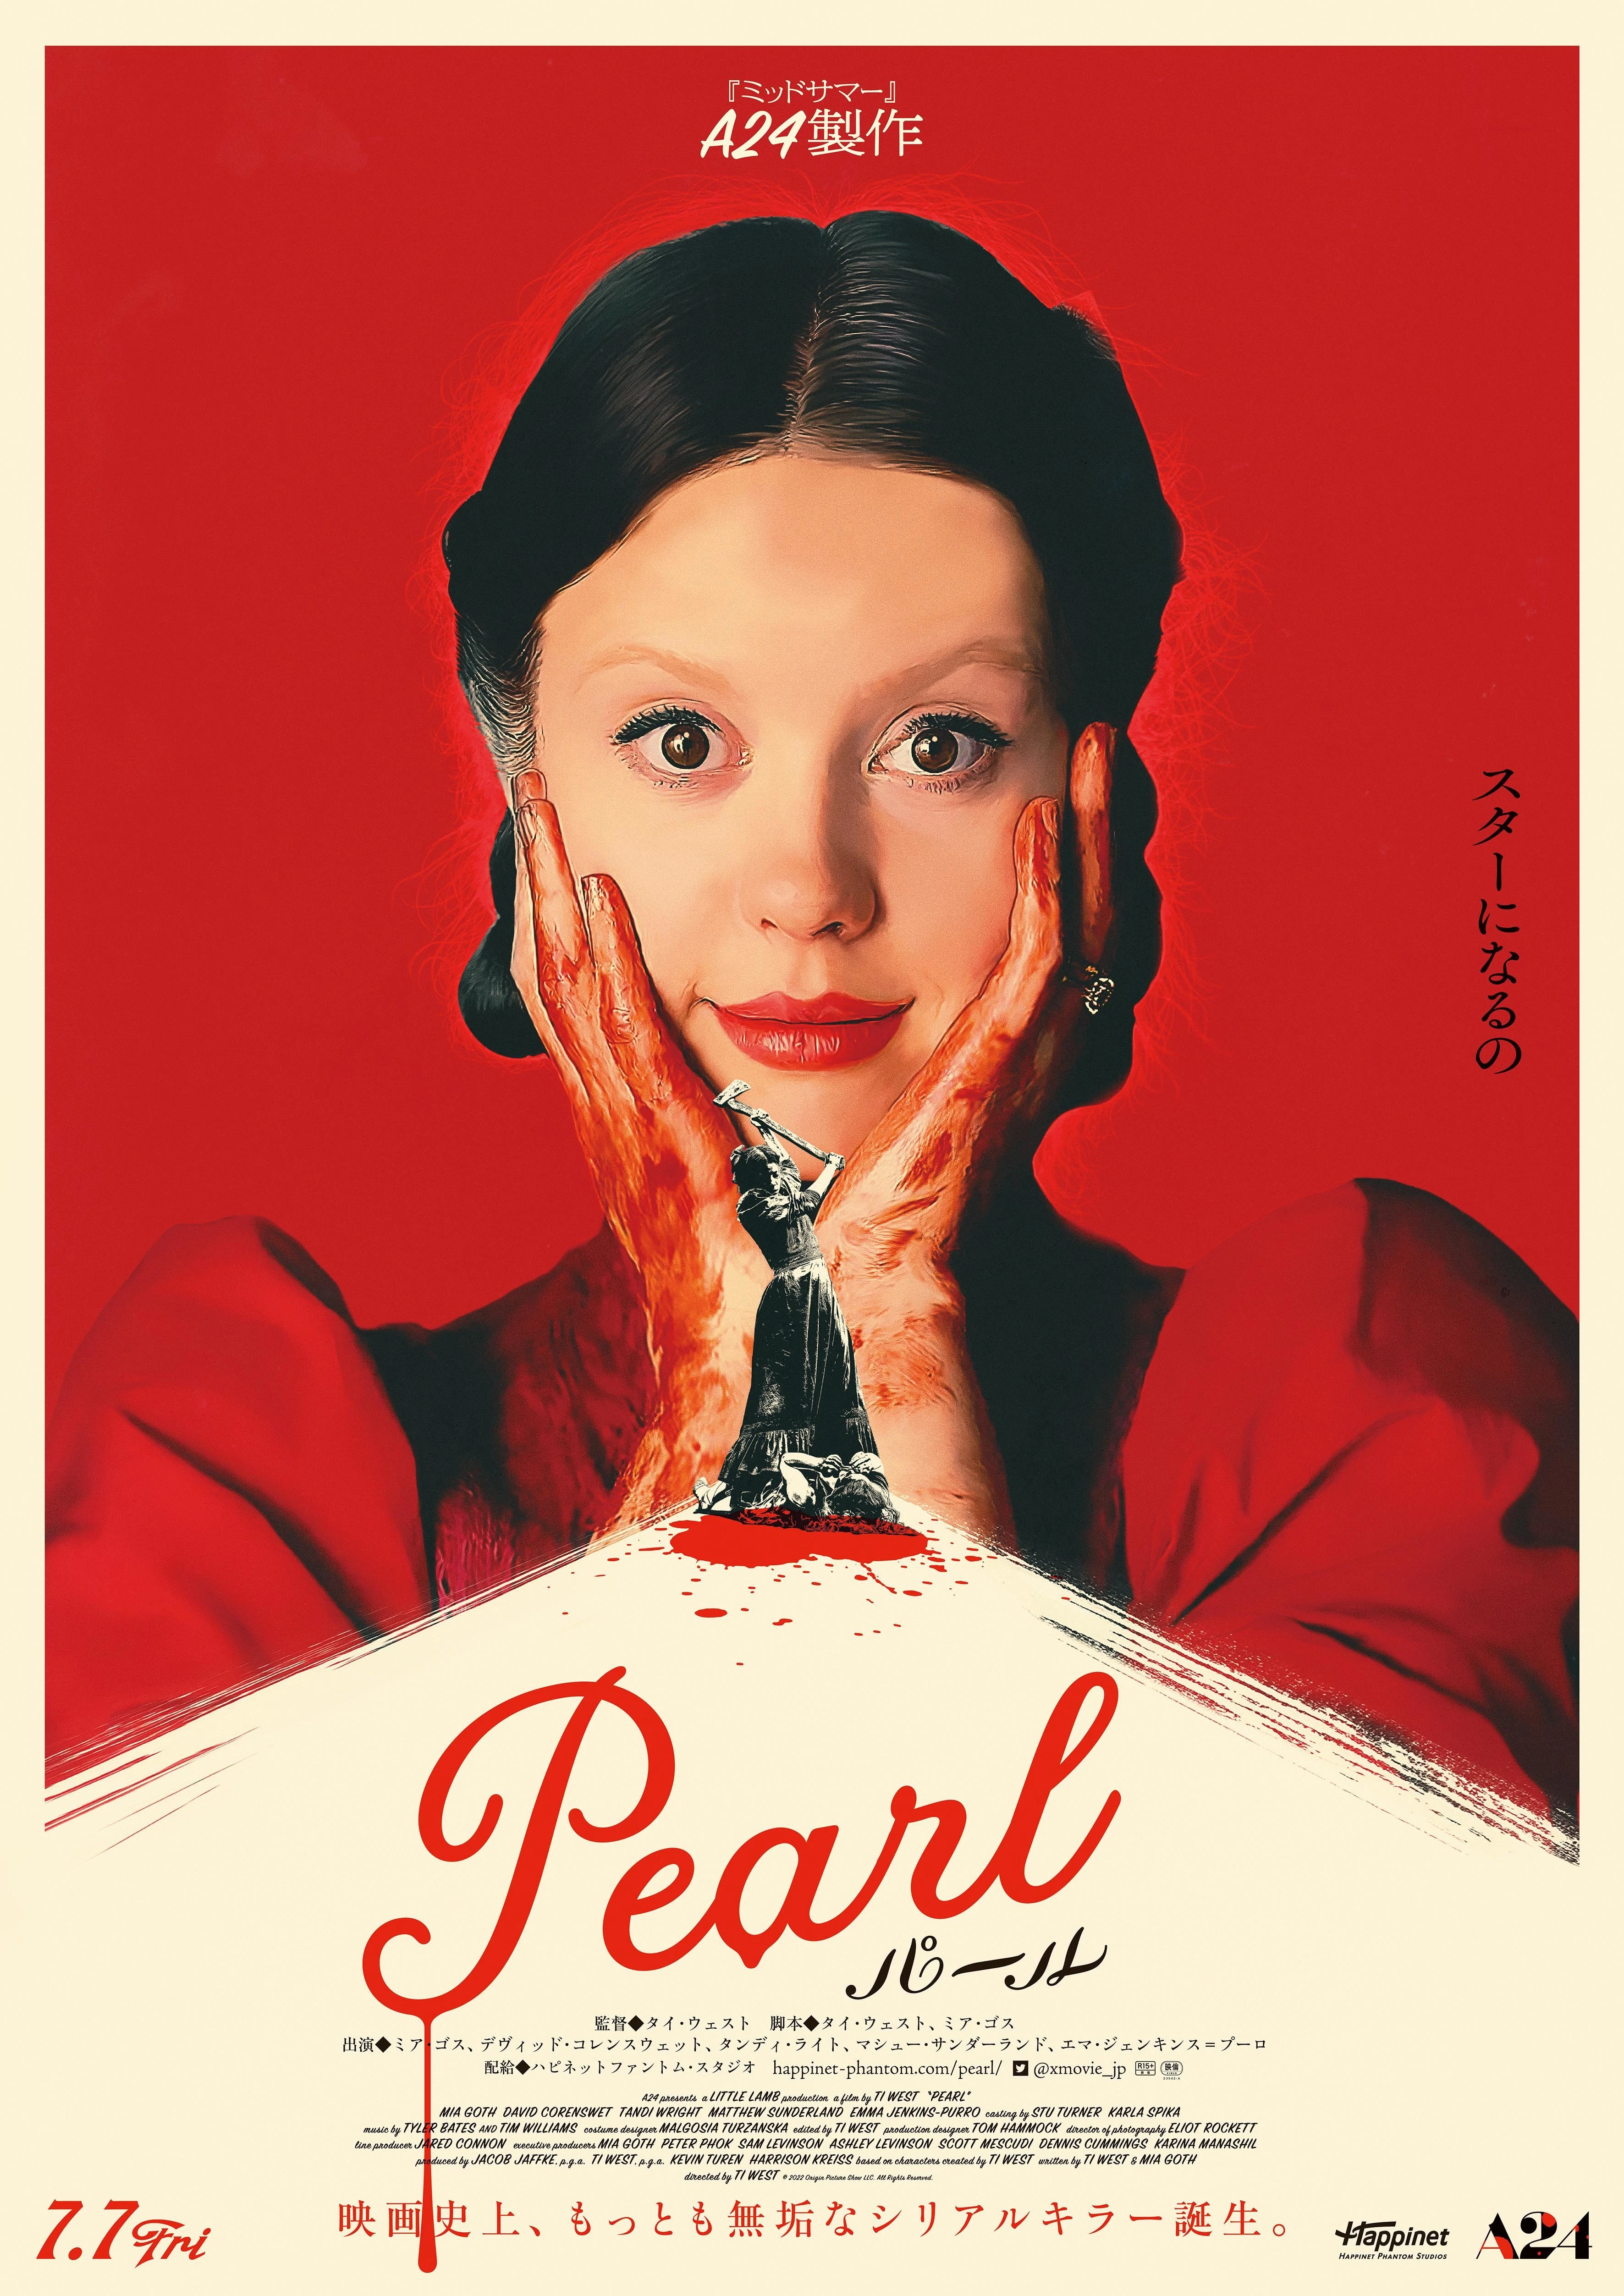 『ミッドサマー』のA24新作『Pearl』7月に公開　狂気の予告とポスター解禁